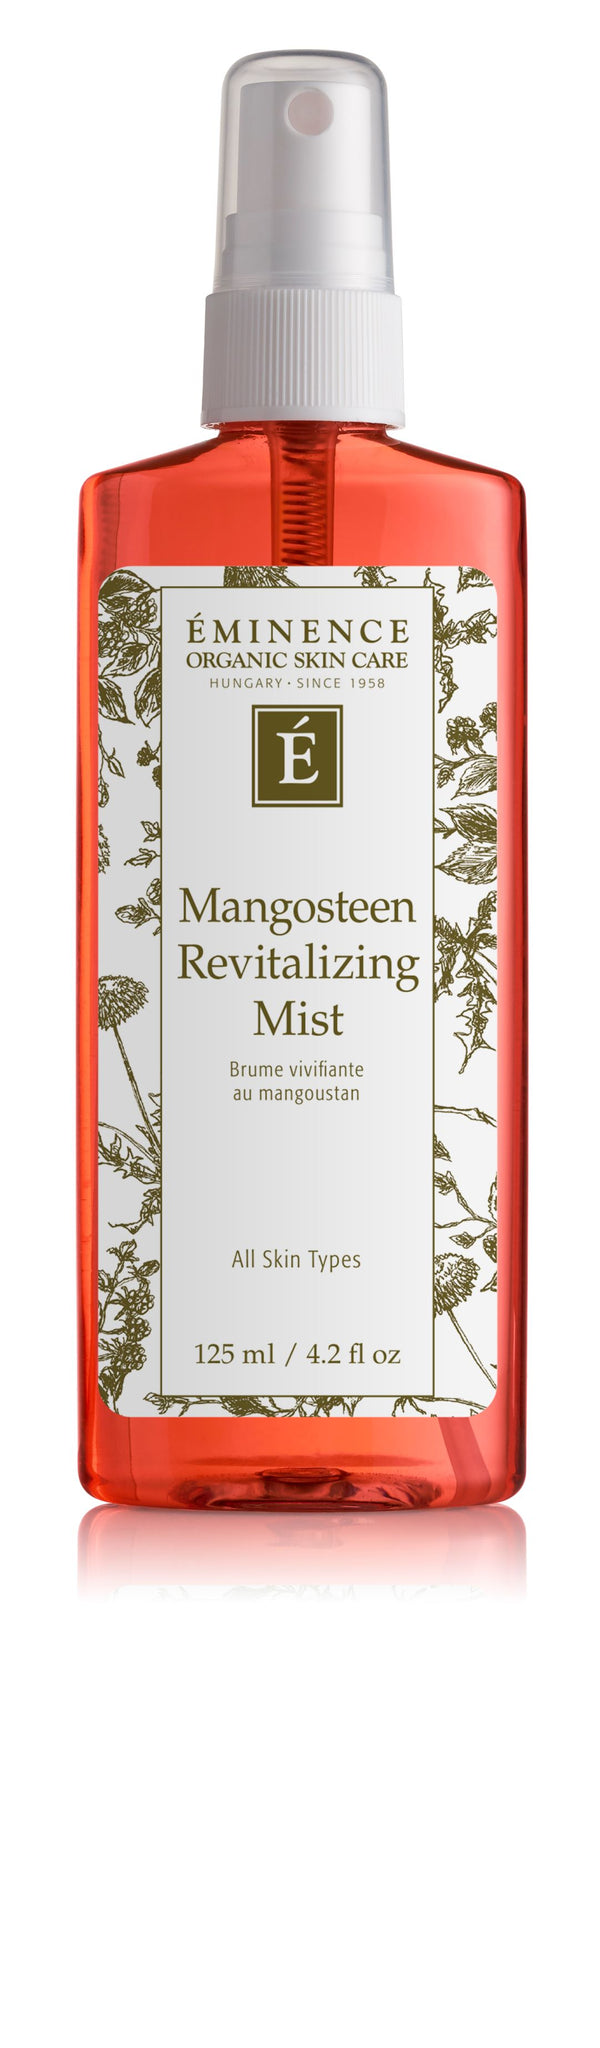 Mangosteen Revitalizing Mist